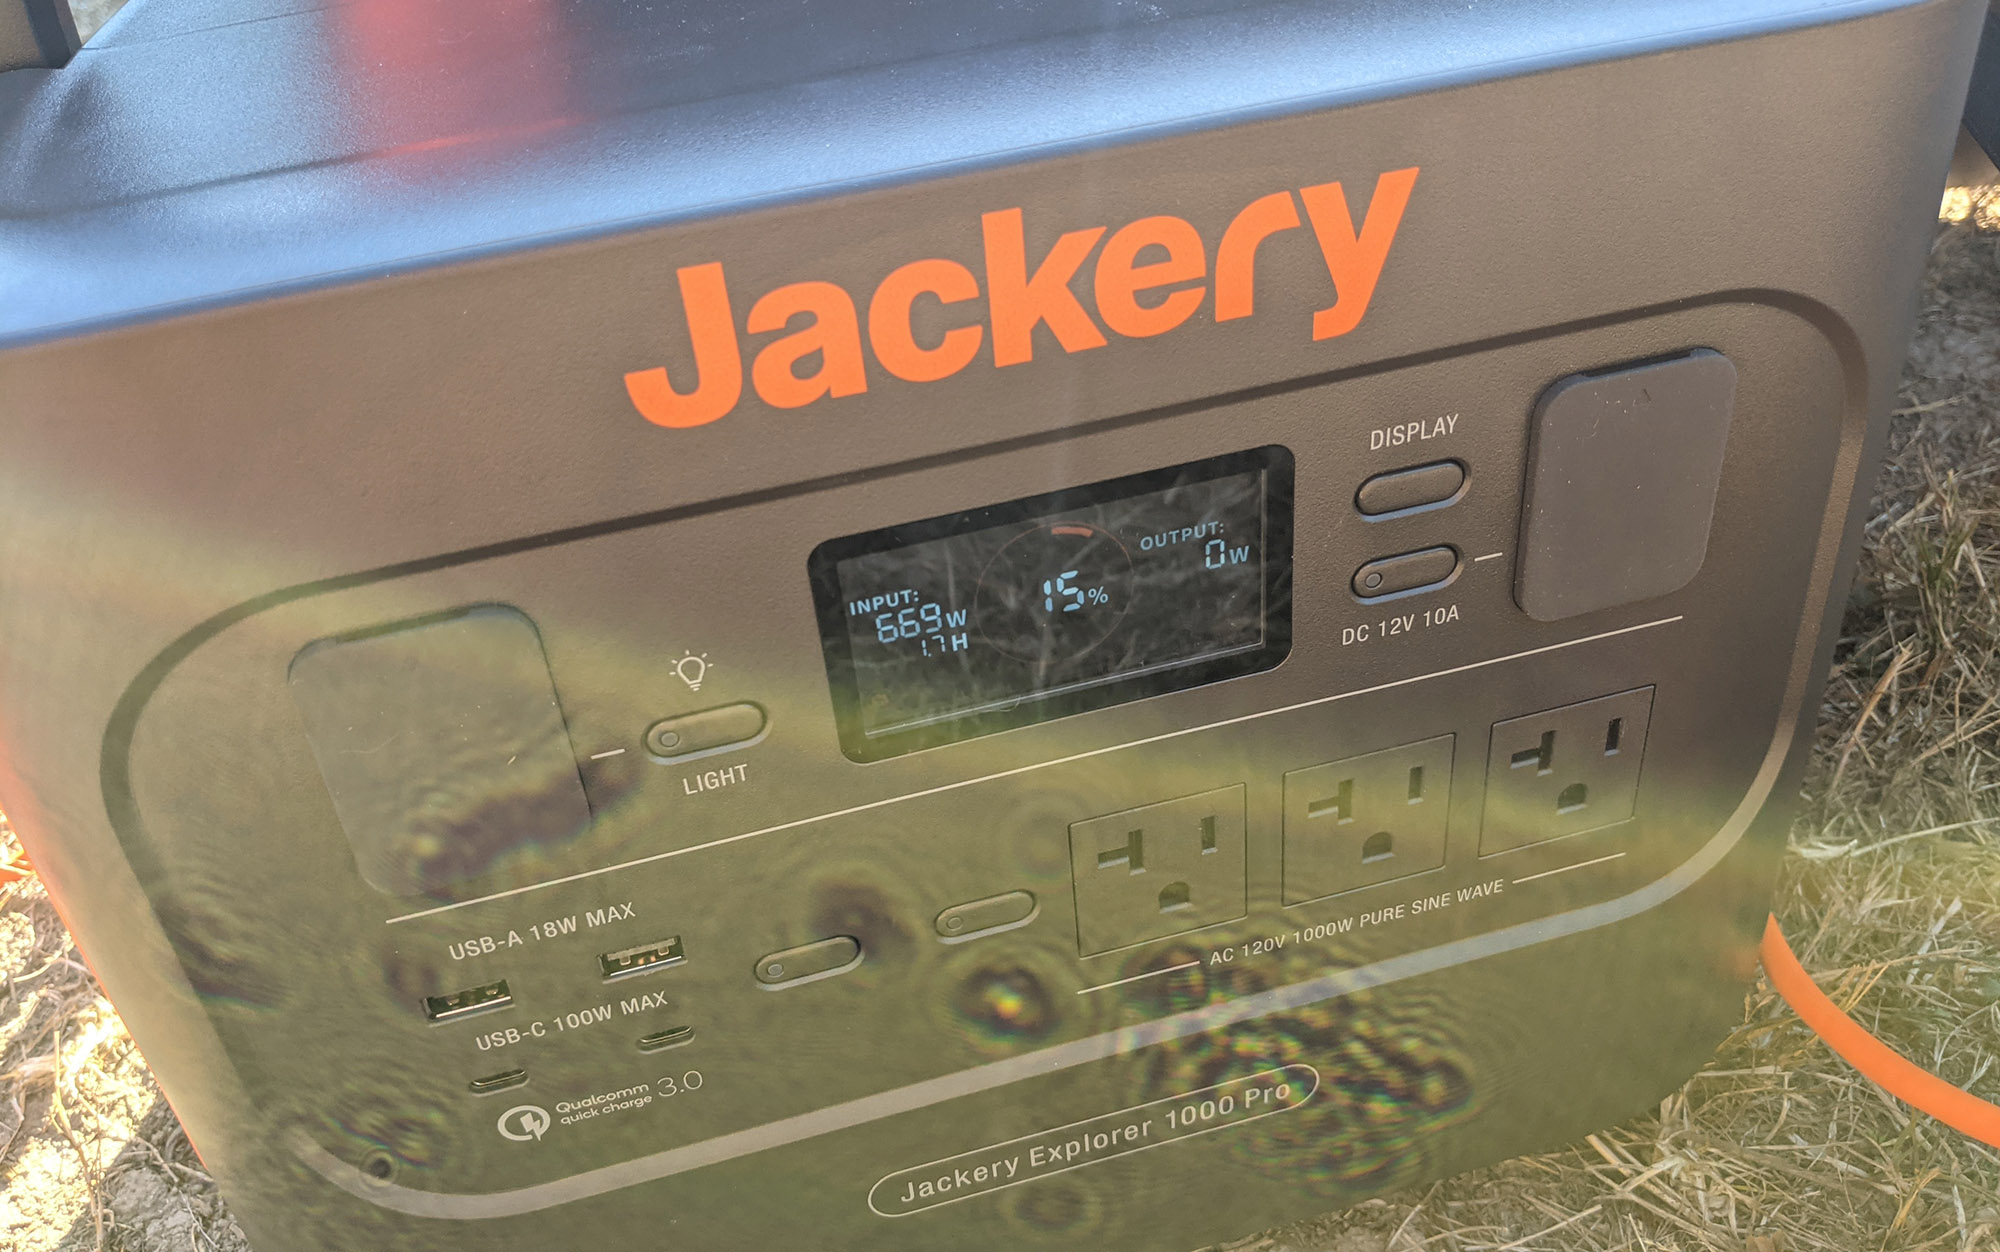 Refurbished Jackery Explorer 1000 Pro Portable Power Station - Black/Orange  - Excellent